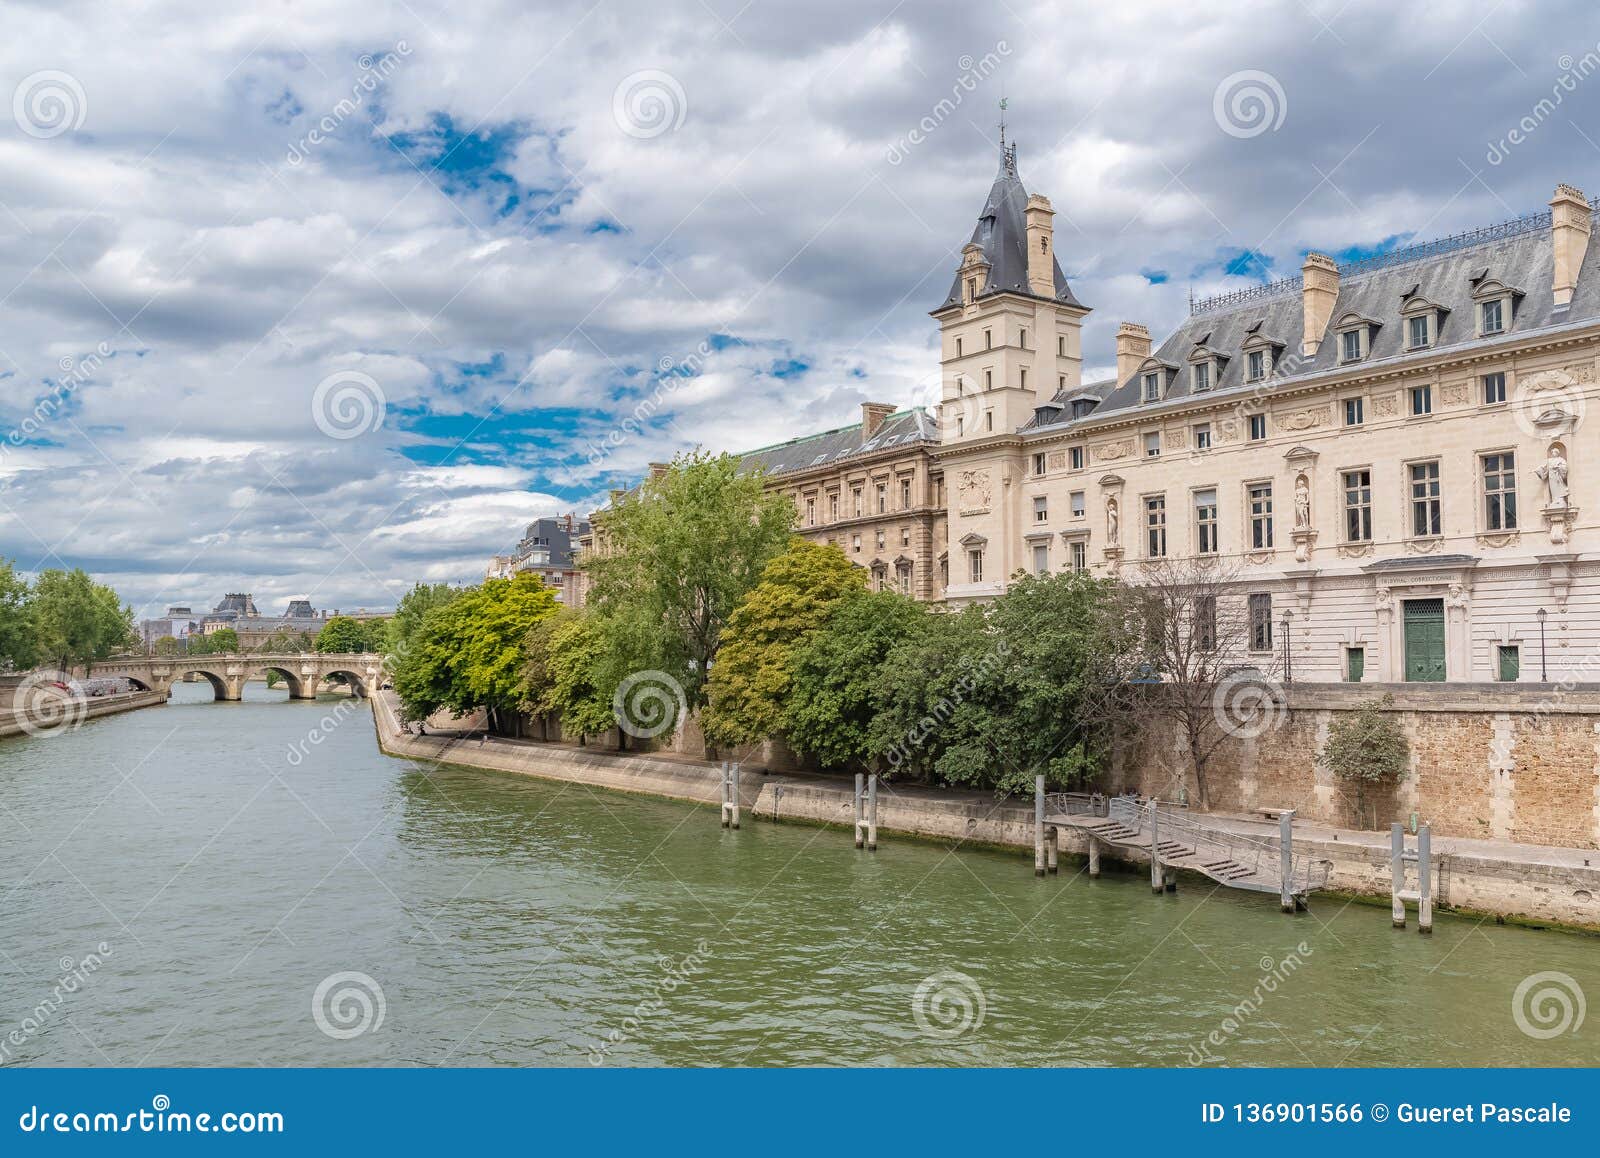 【携程攻略】巴黎塞纳河景点,塞纳河游船是一定要去体验，能欣赏到河两岸的名胜古迹，和河岸边、桥…